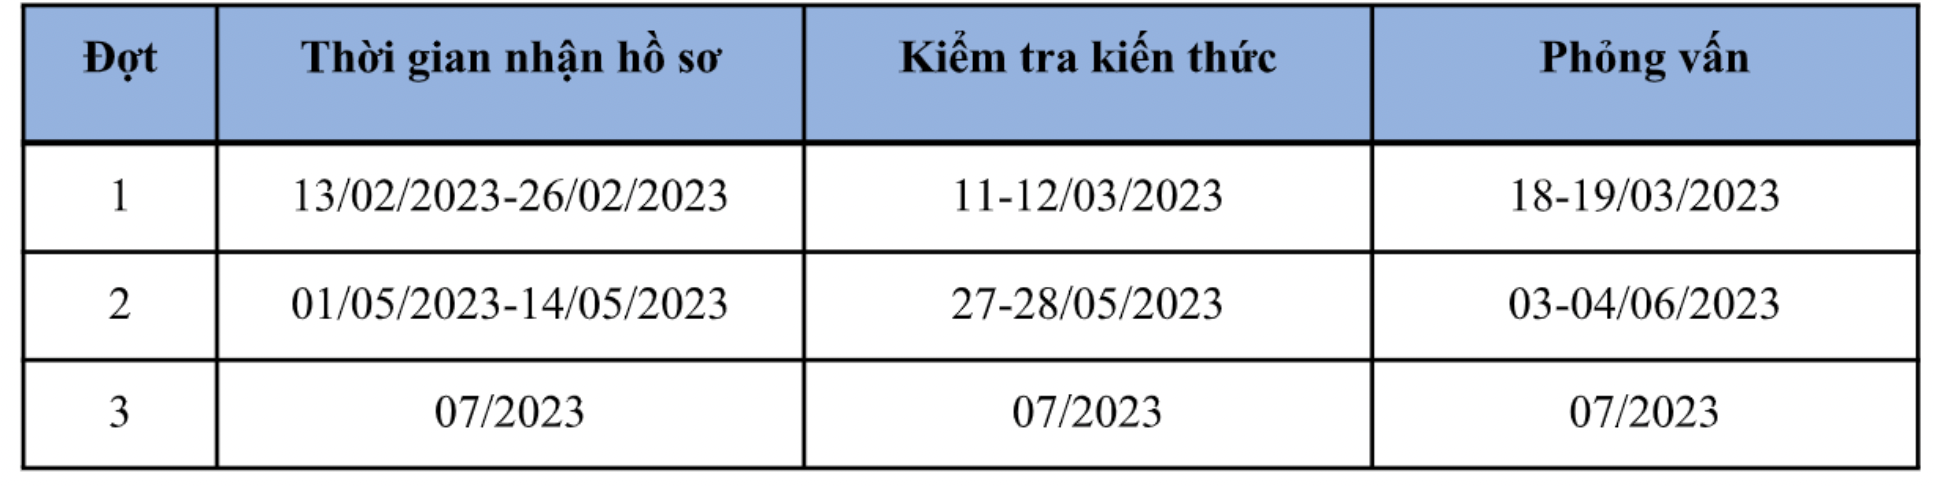 Lịch các đợt tuyển sinh riêng của Trường Đại học Vnăm 2023